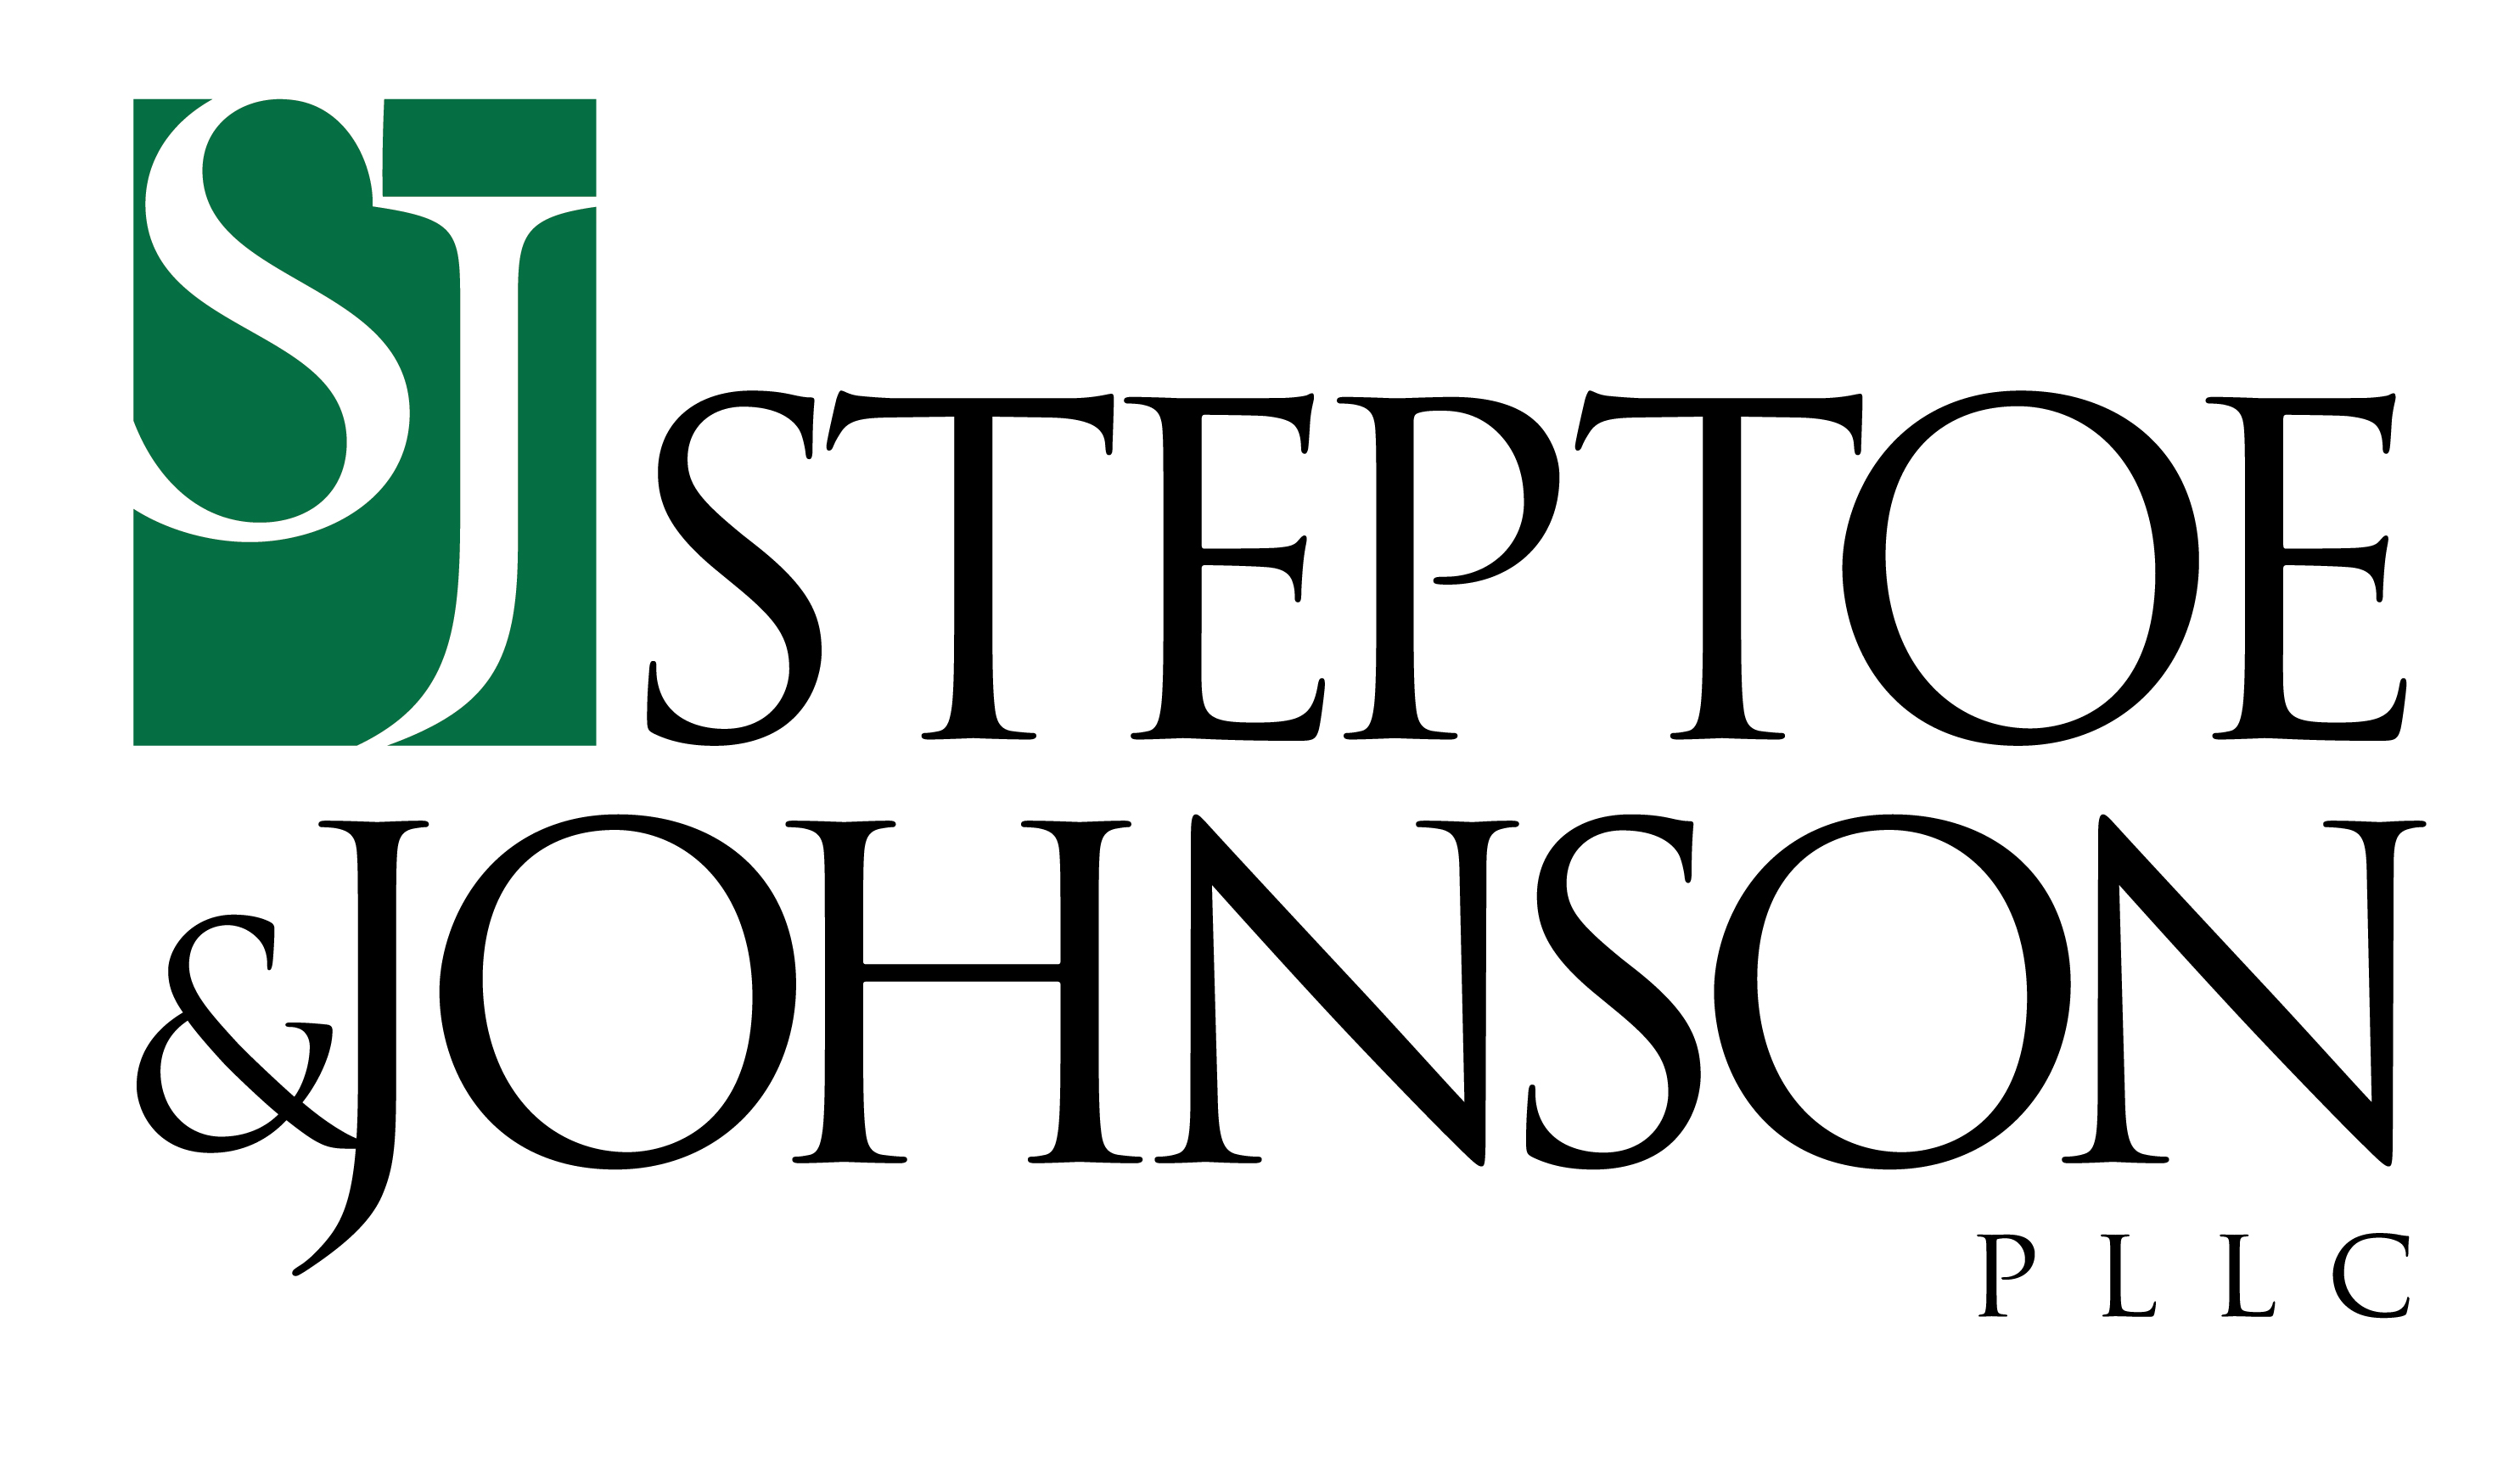 steptoe-joSteptoe & Johnson PLLChnson-logo-standard-black-green-jpg.jpg